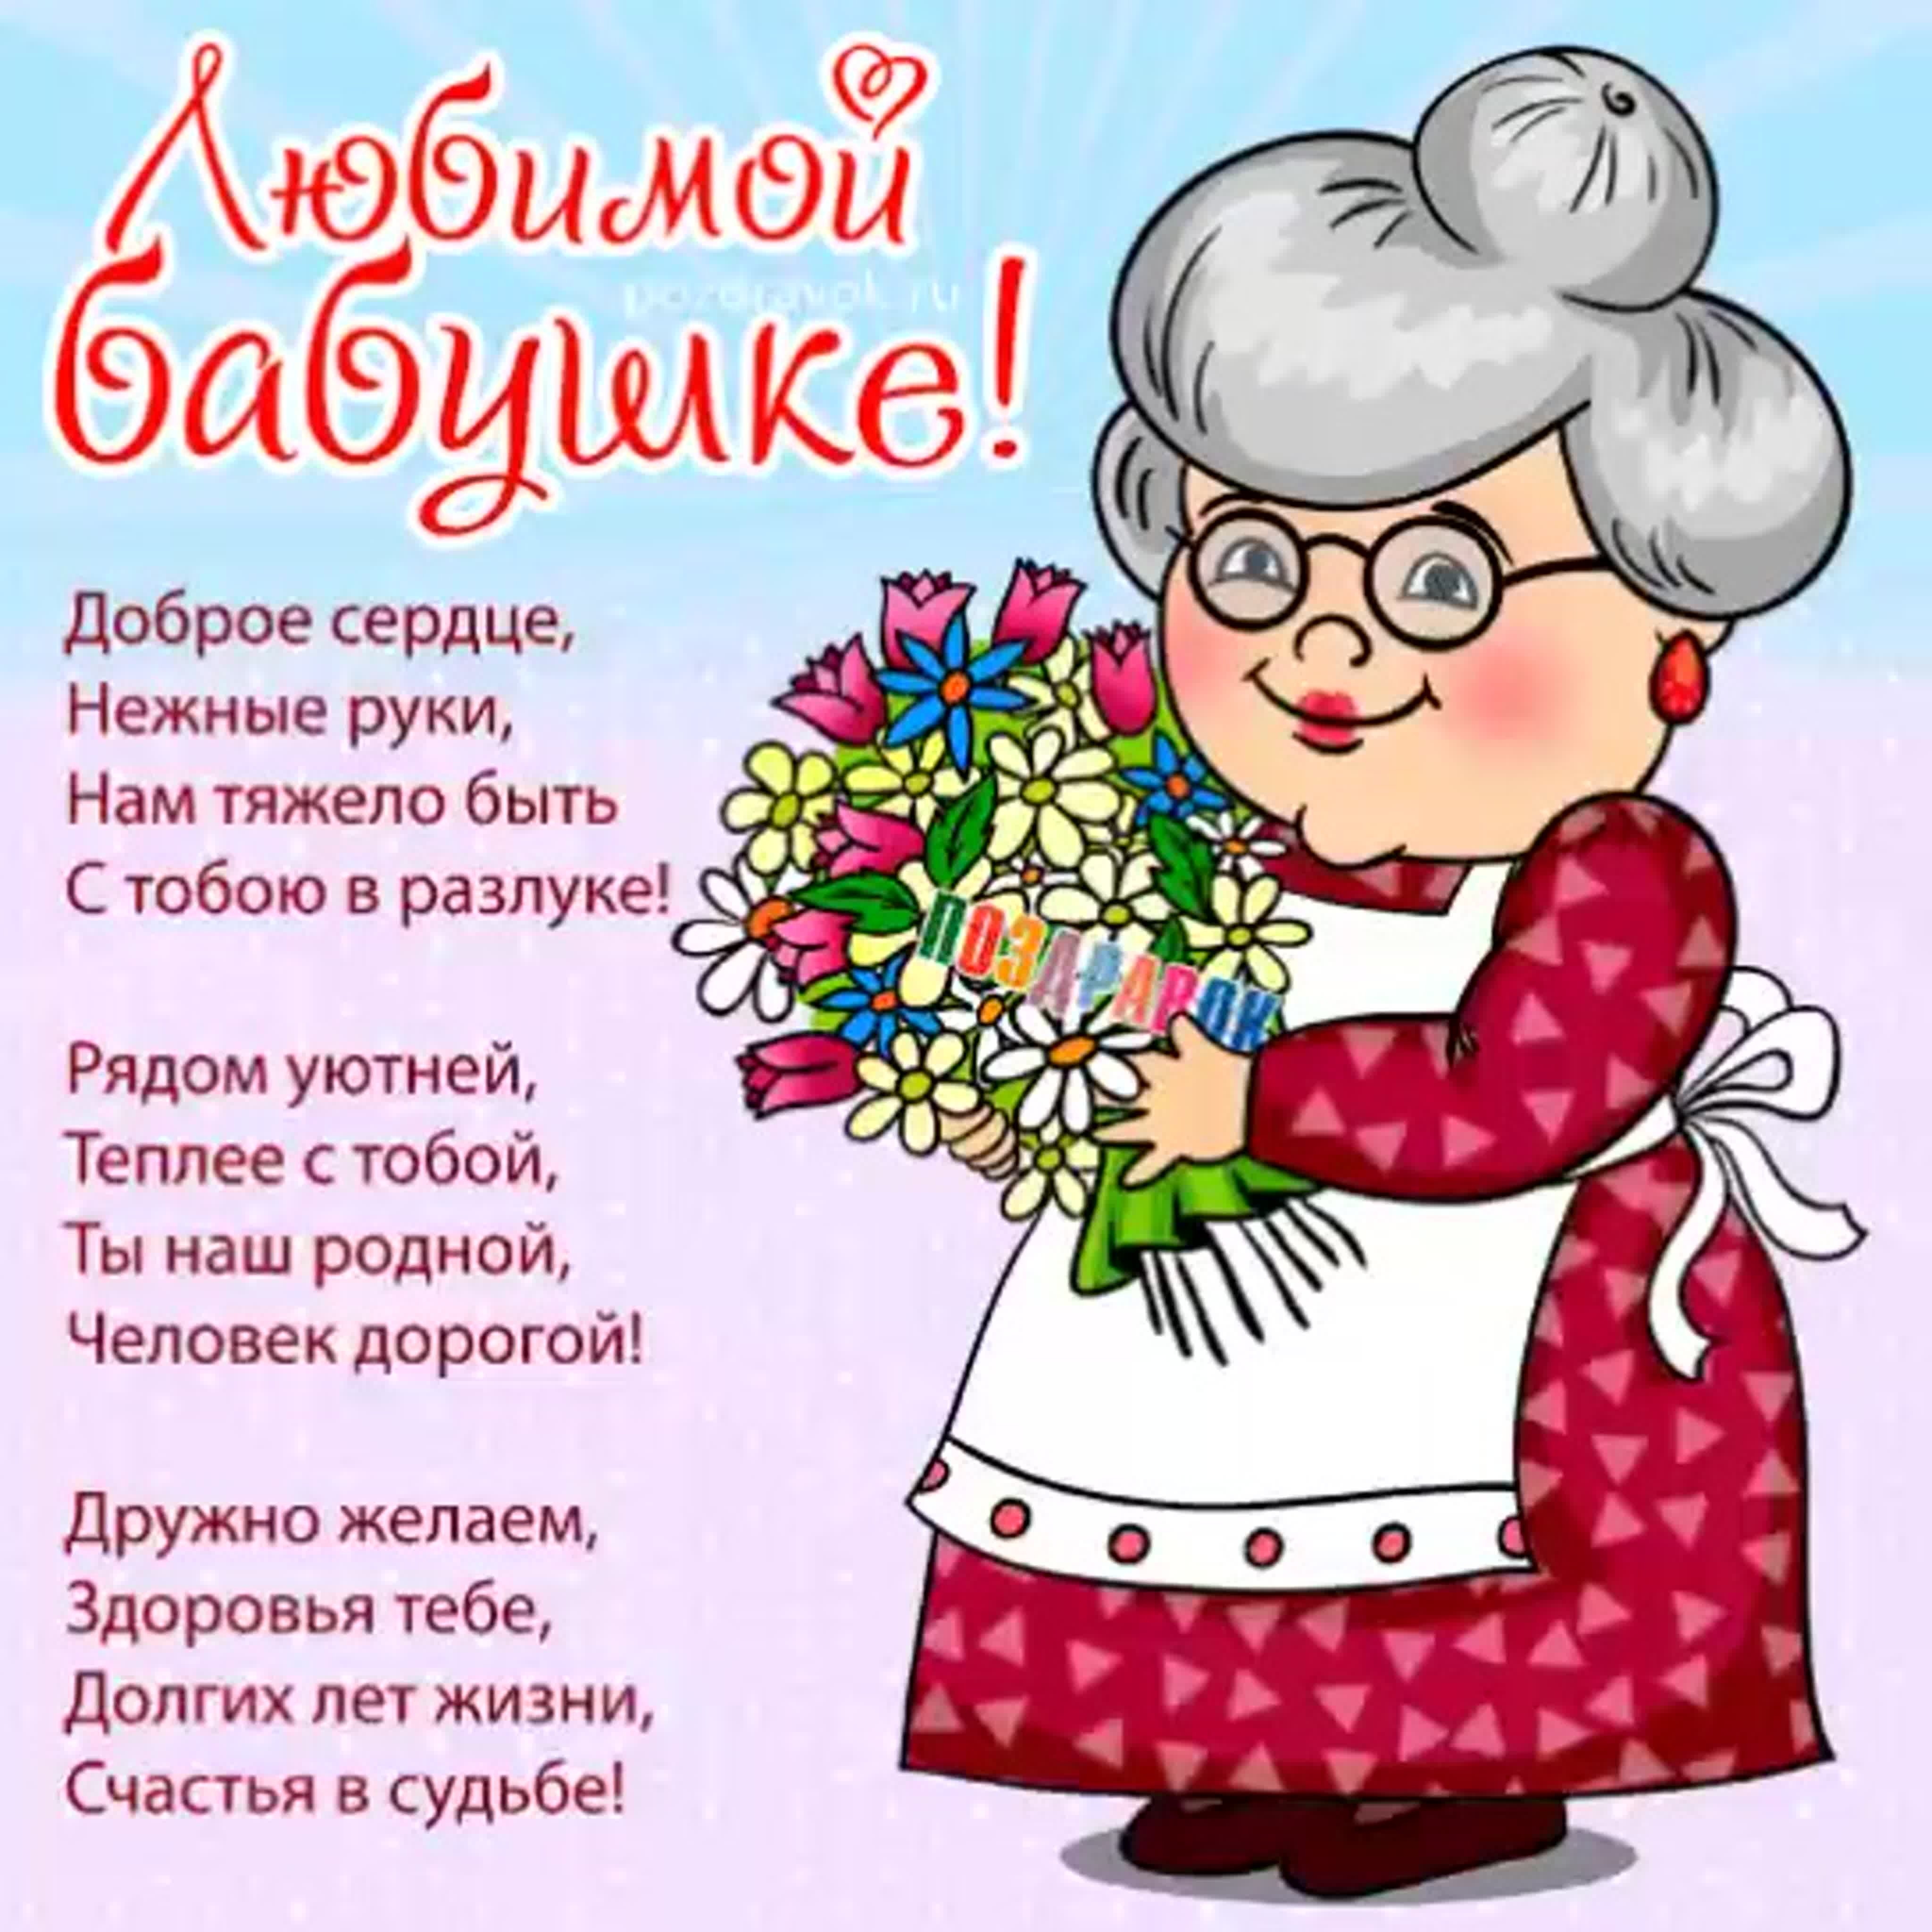 Злате Викторовне, мой бабушке, сегодня 89 лет! — 10 ответов | форум Babyblog